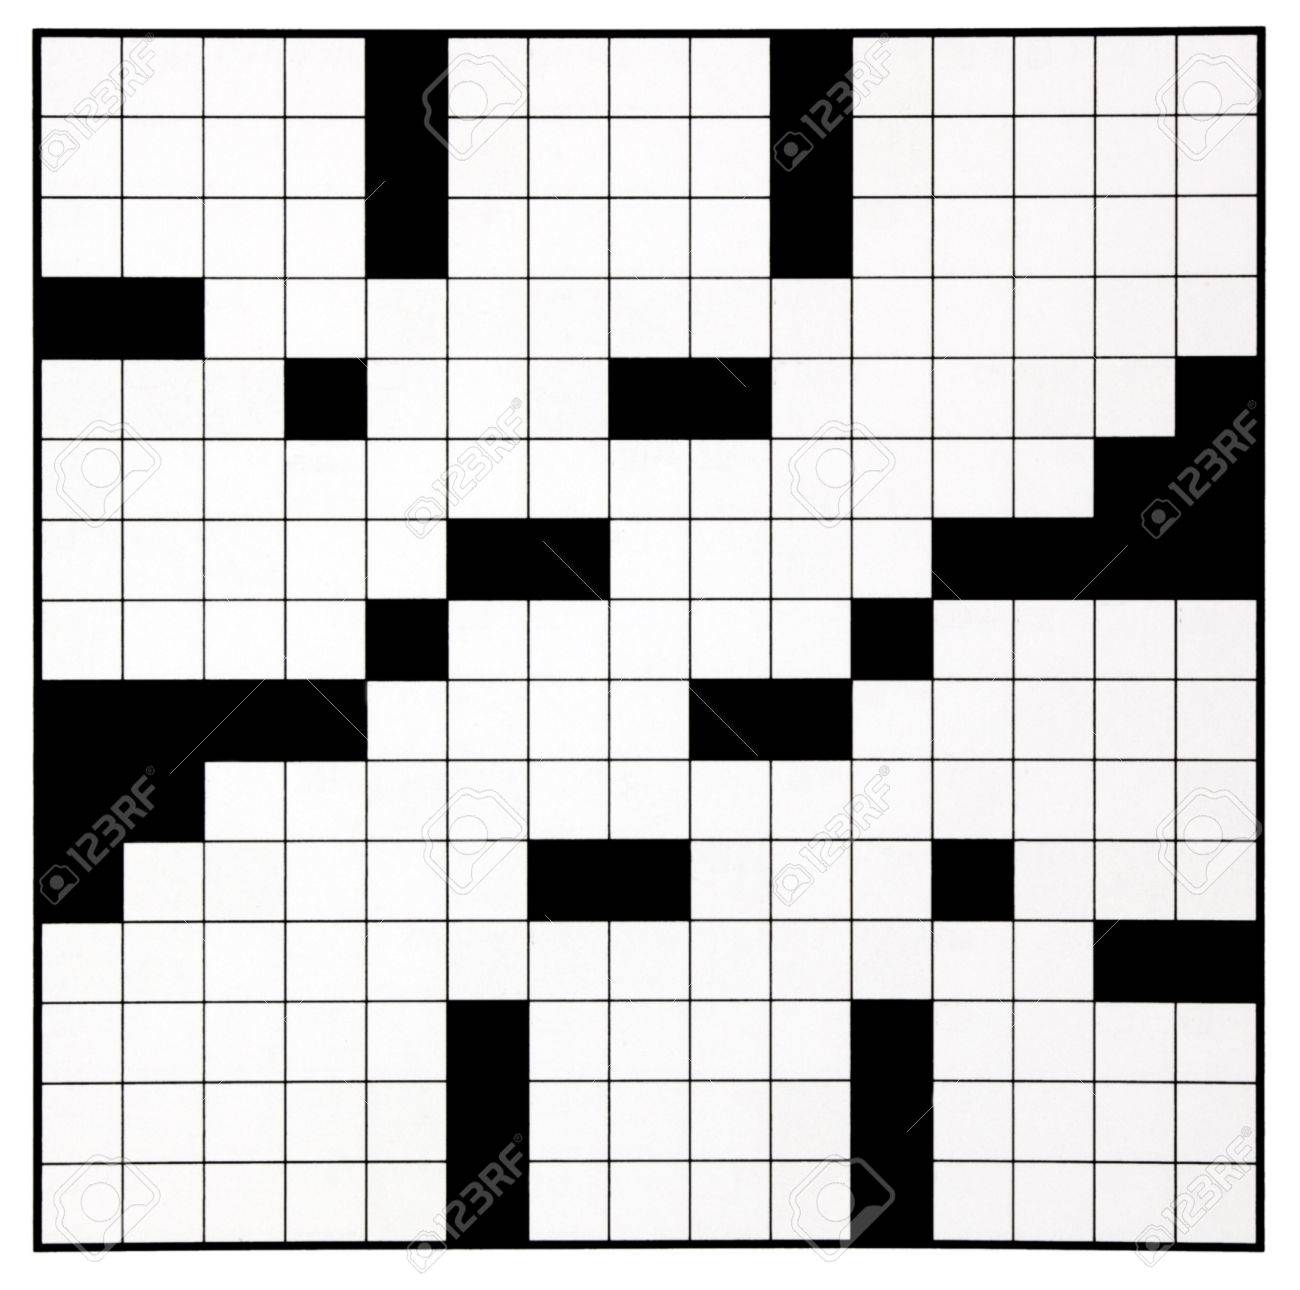 Blank Crossword Puzzle Grid - Karis.sticken.co - Printable Crossword Grid